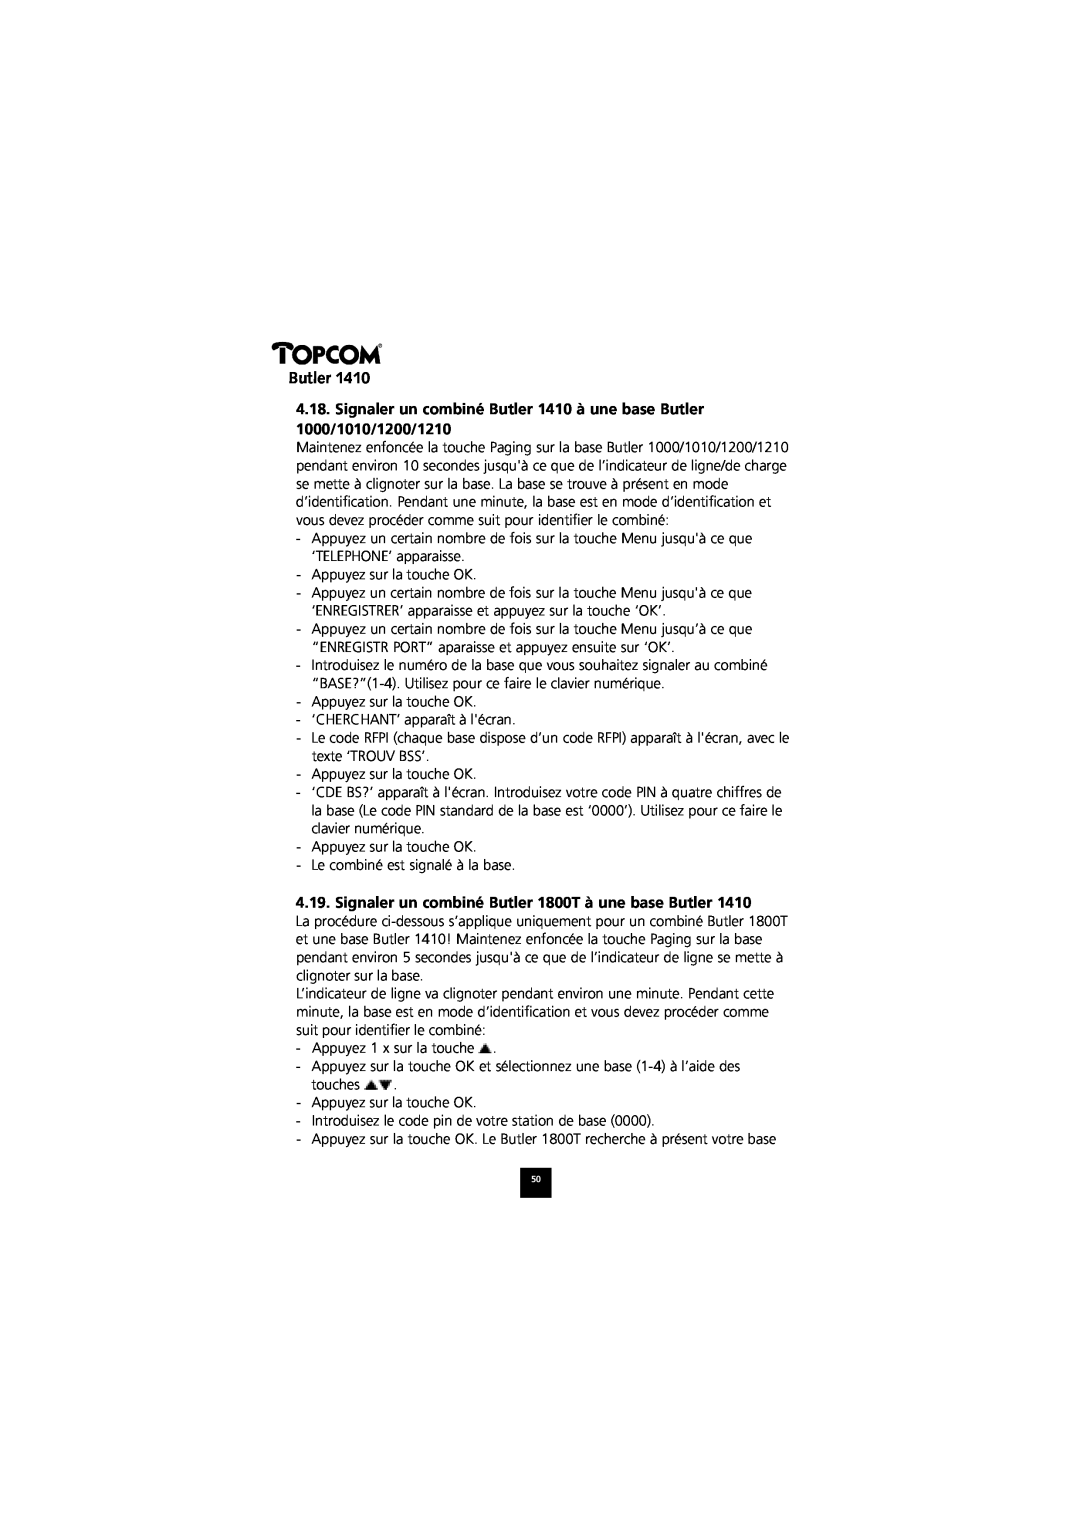 Topcom 1410 manual Signaler un combiné Butler 1800T à une base Butler 